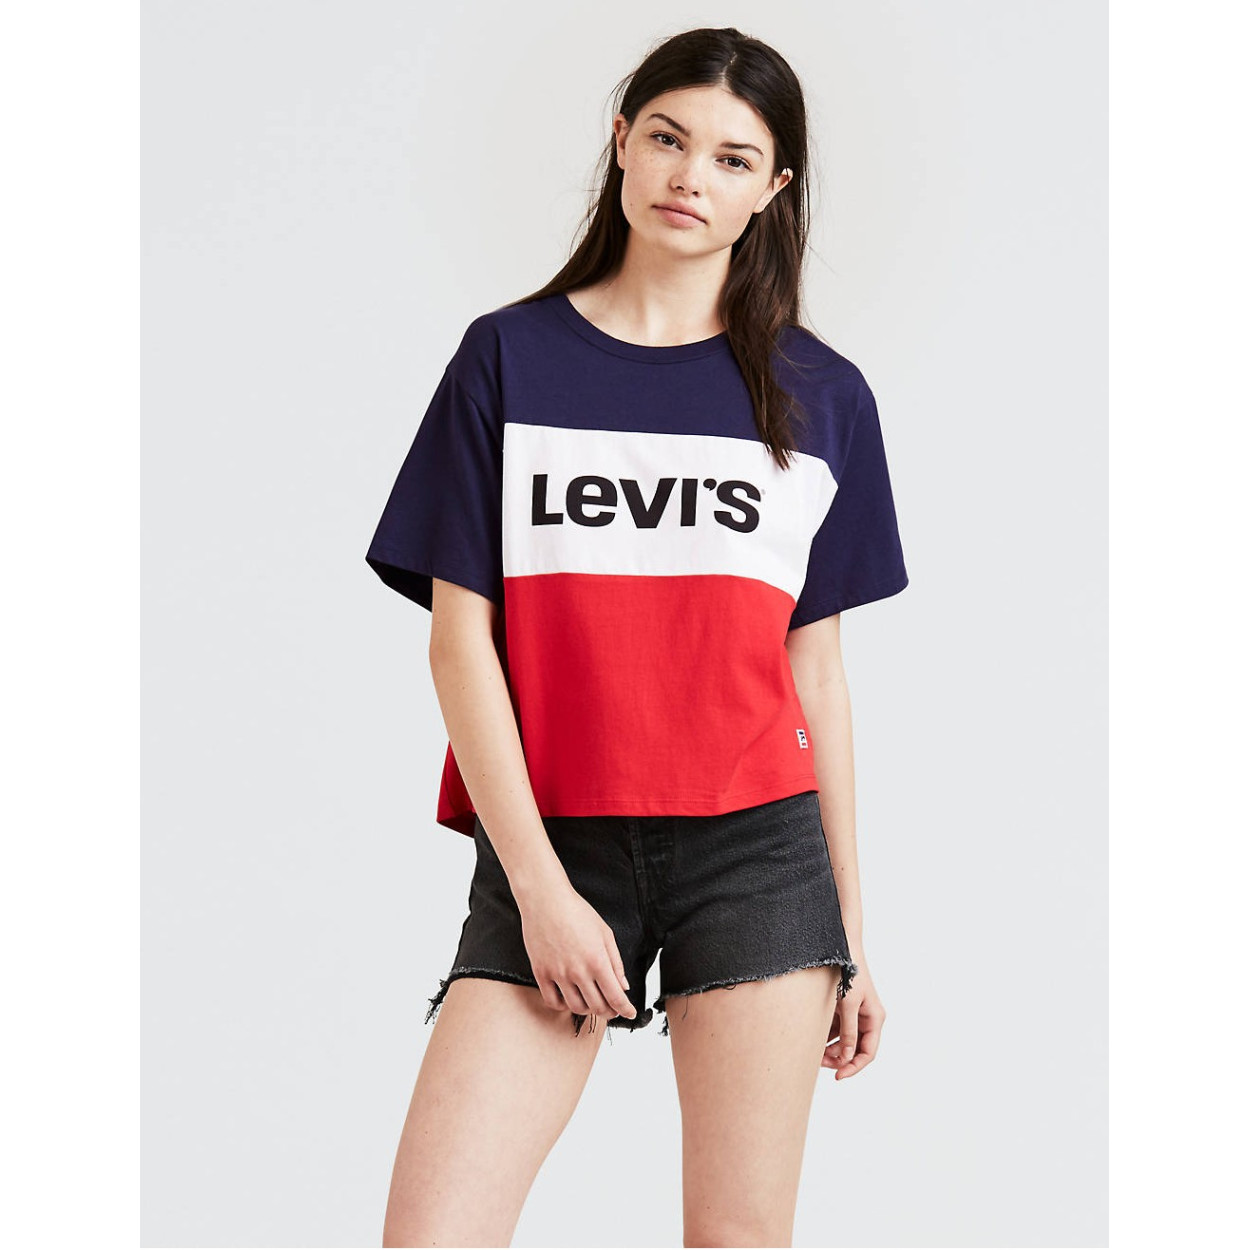 tee shirt levis femme original cheap online